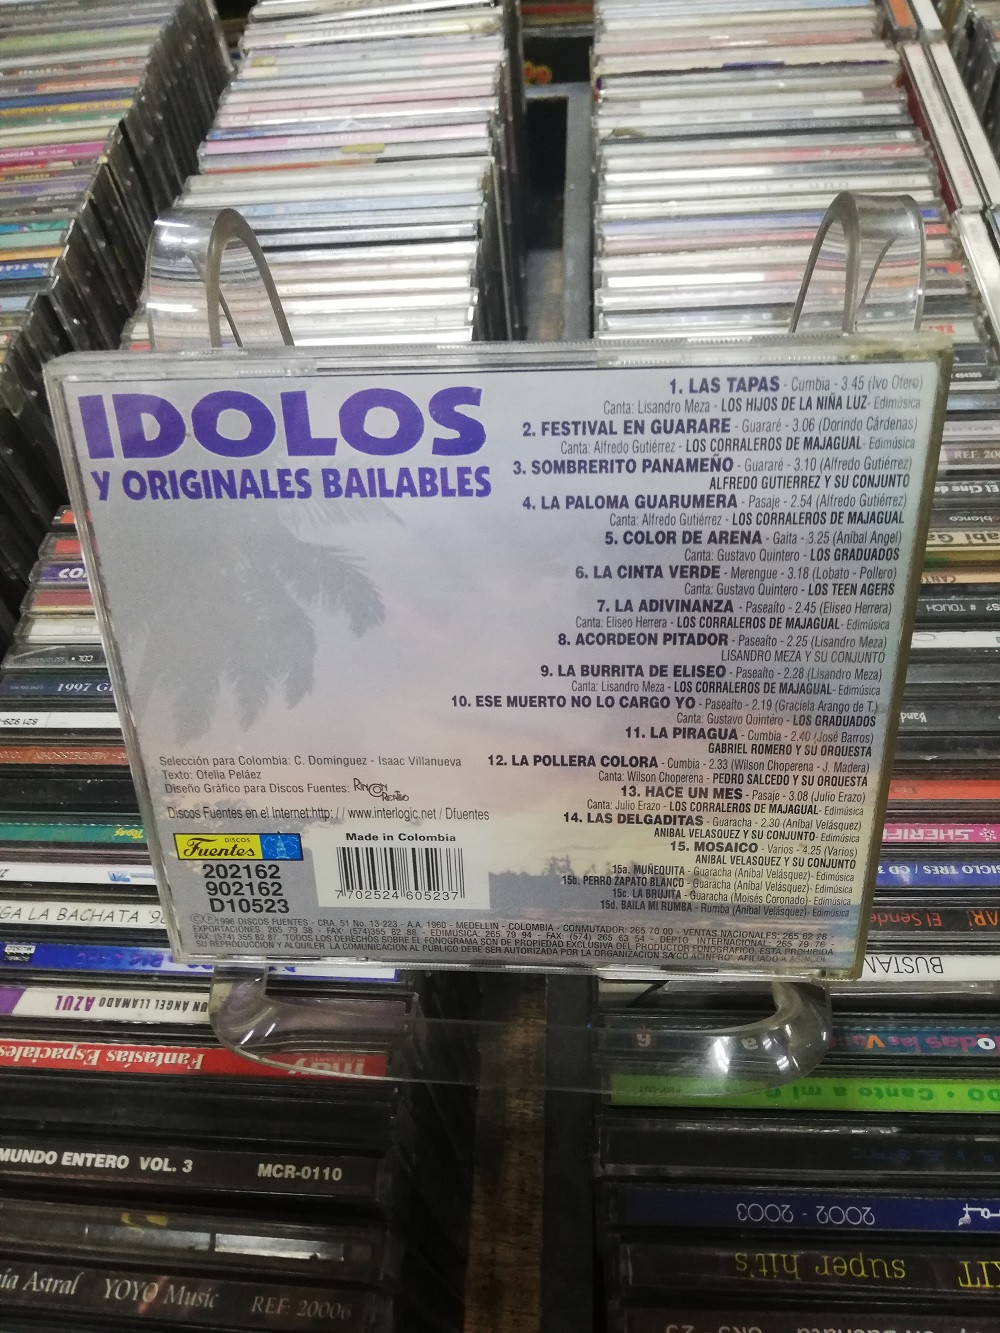 Imagen CD IDOLOS Y ORIGINALES BAILABLES 2